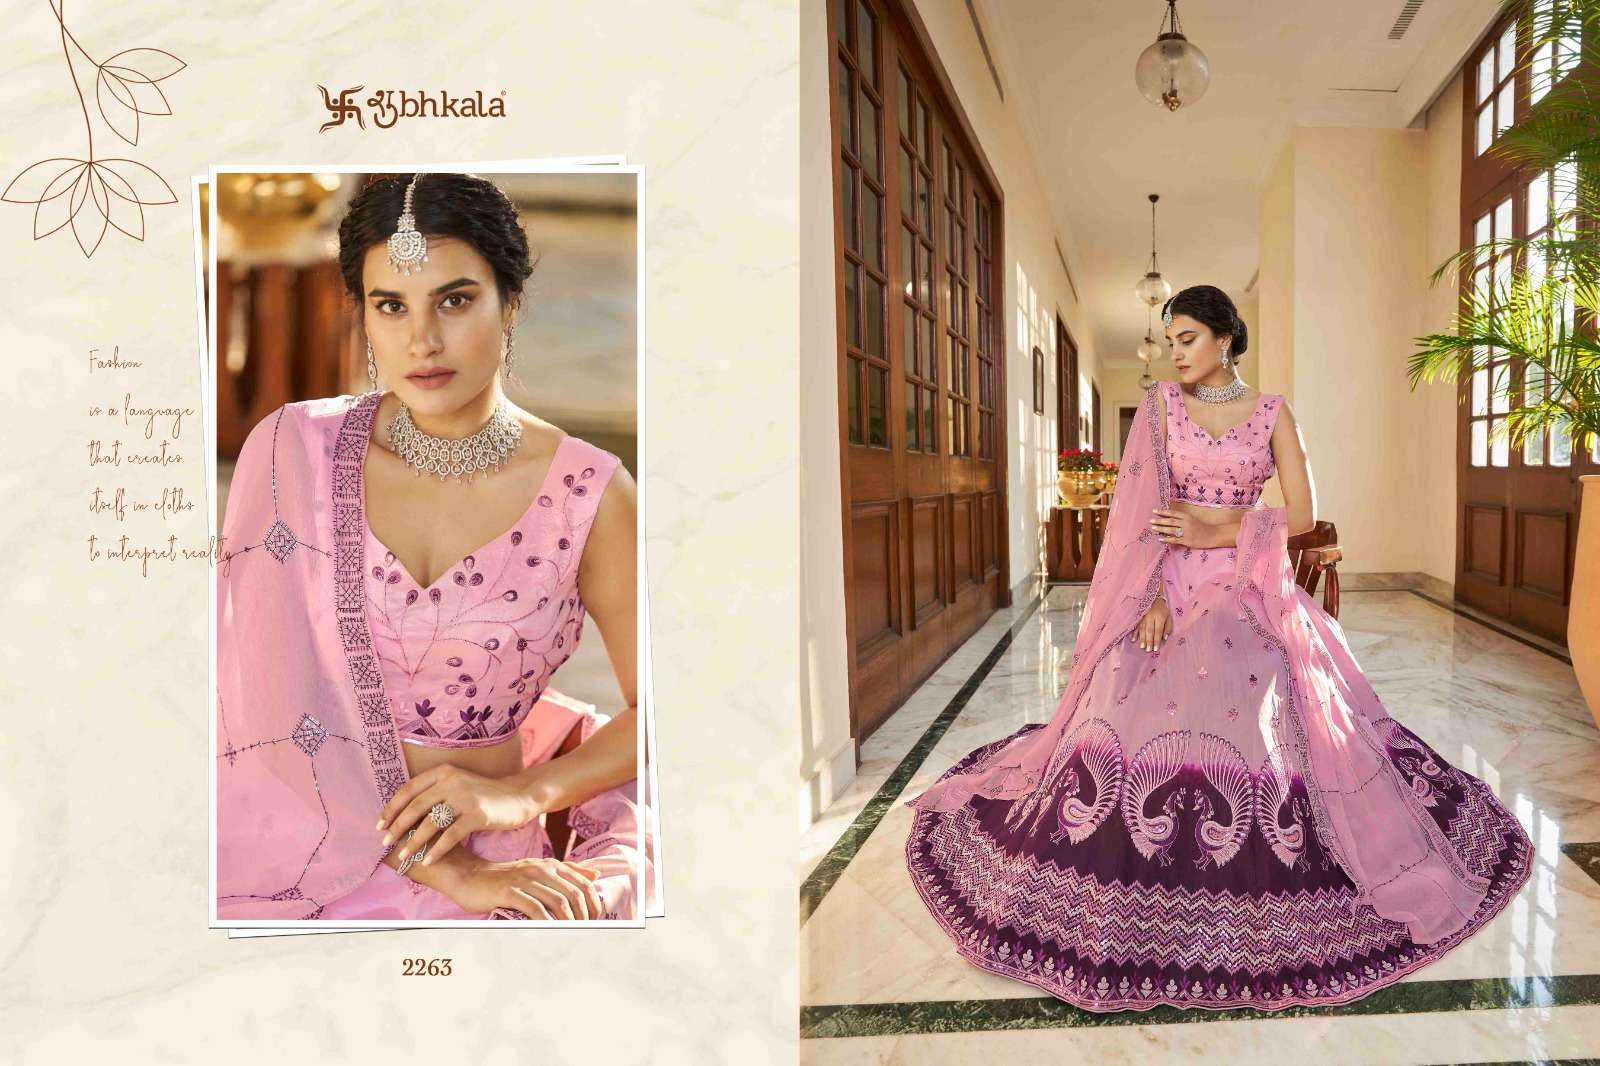 shubhakala Bridesmaid Vol. 27 art silk elegant look lehngha catalog